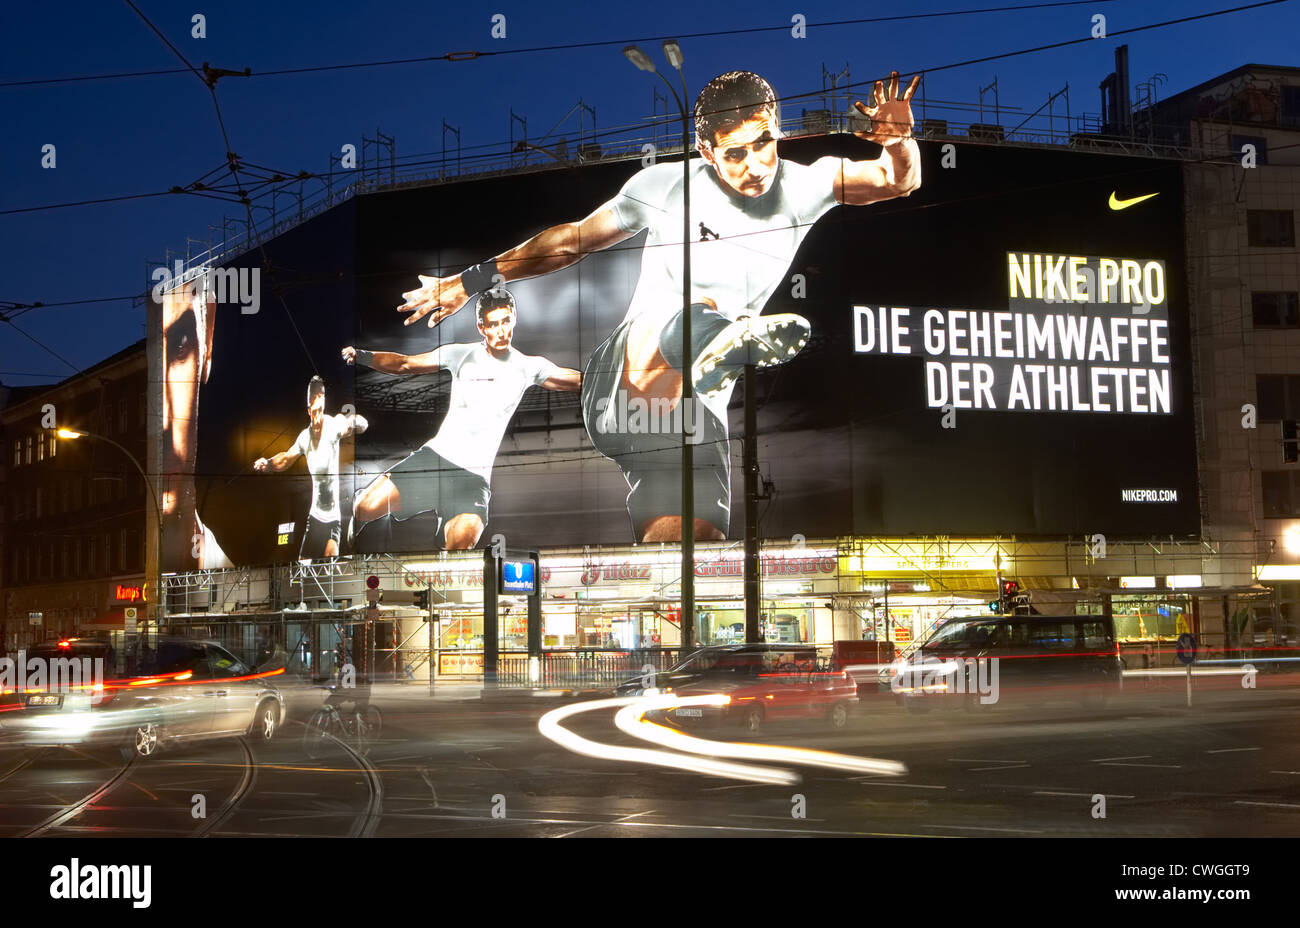 Berlin - Riesen beleuchteten Reklametafel für Nike aus einem Abflussrohr  Stockfotografie - Alamy